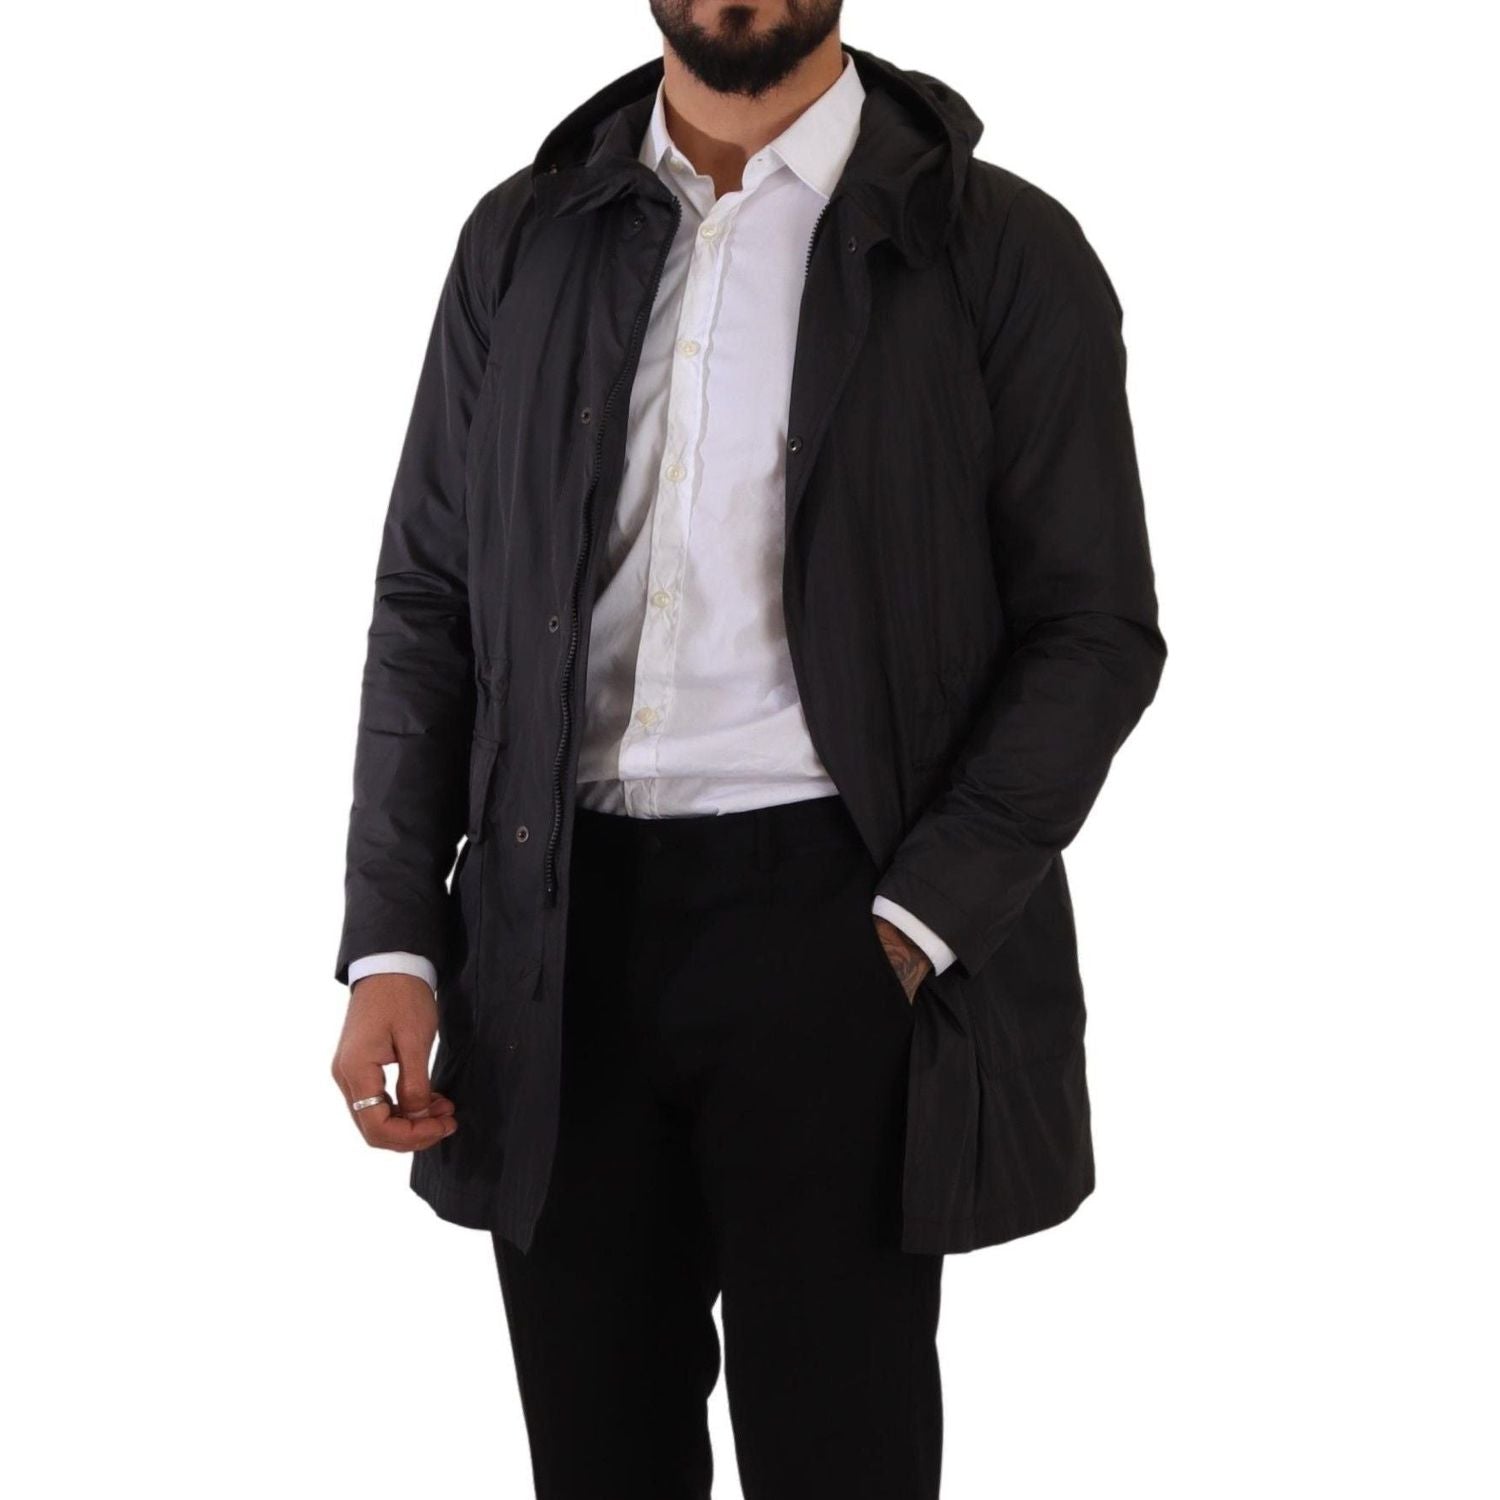 Dolce & Gabbana | Black Polyester Hooded Parka Coat Jacket  | McRichard Designer Brands